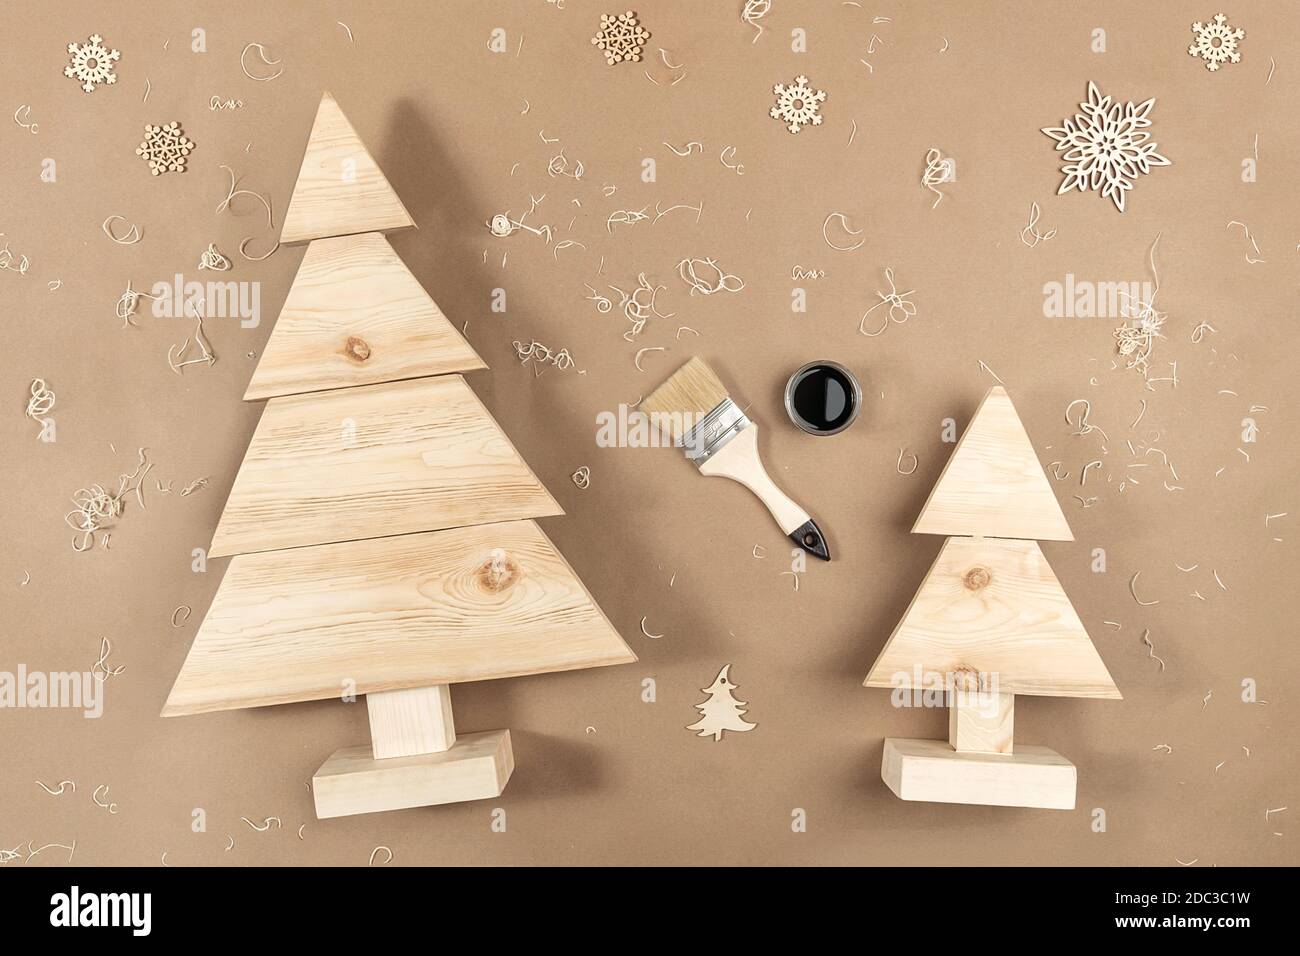 Komposition ZU WEIHNACHTEN oder Neujahr. Handgemachte Weihnachtsbäume aus Holz, Farbe, Pinsel auf hellbeigem Hintergrund. Konzept Zero Waste, Eco - Friendly Merry Chri Stockfoto